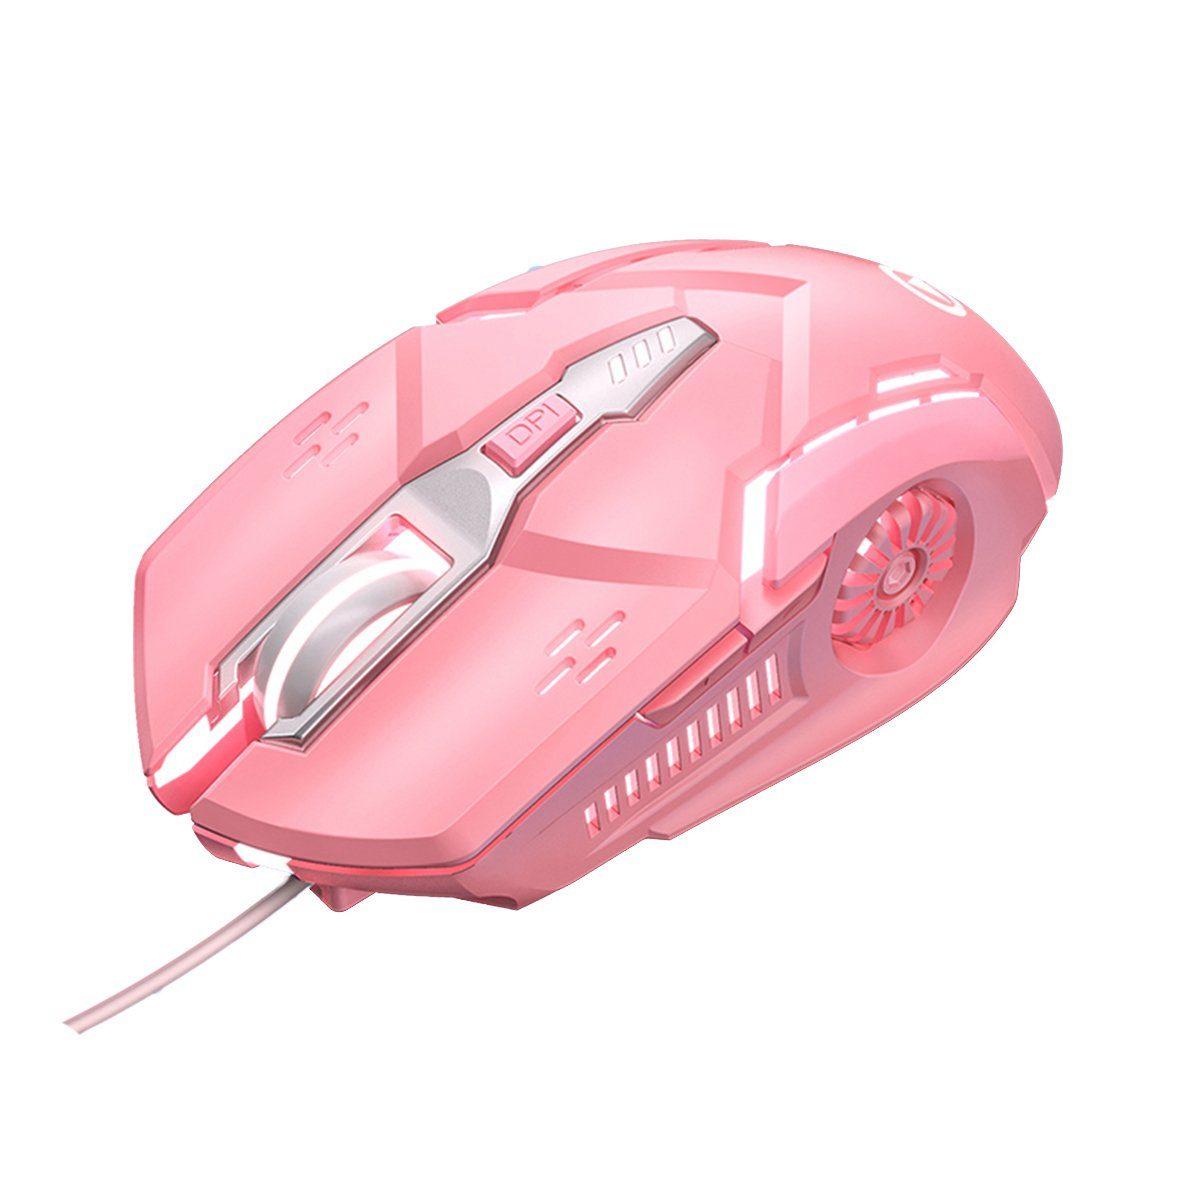 KINSI mechanische Gaming-Maus rosa Maus,Sound-Maus,Gaming-Maus,6-Tasten Maus, Maus,kabelgebundene